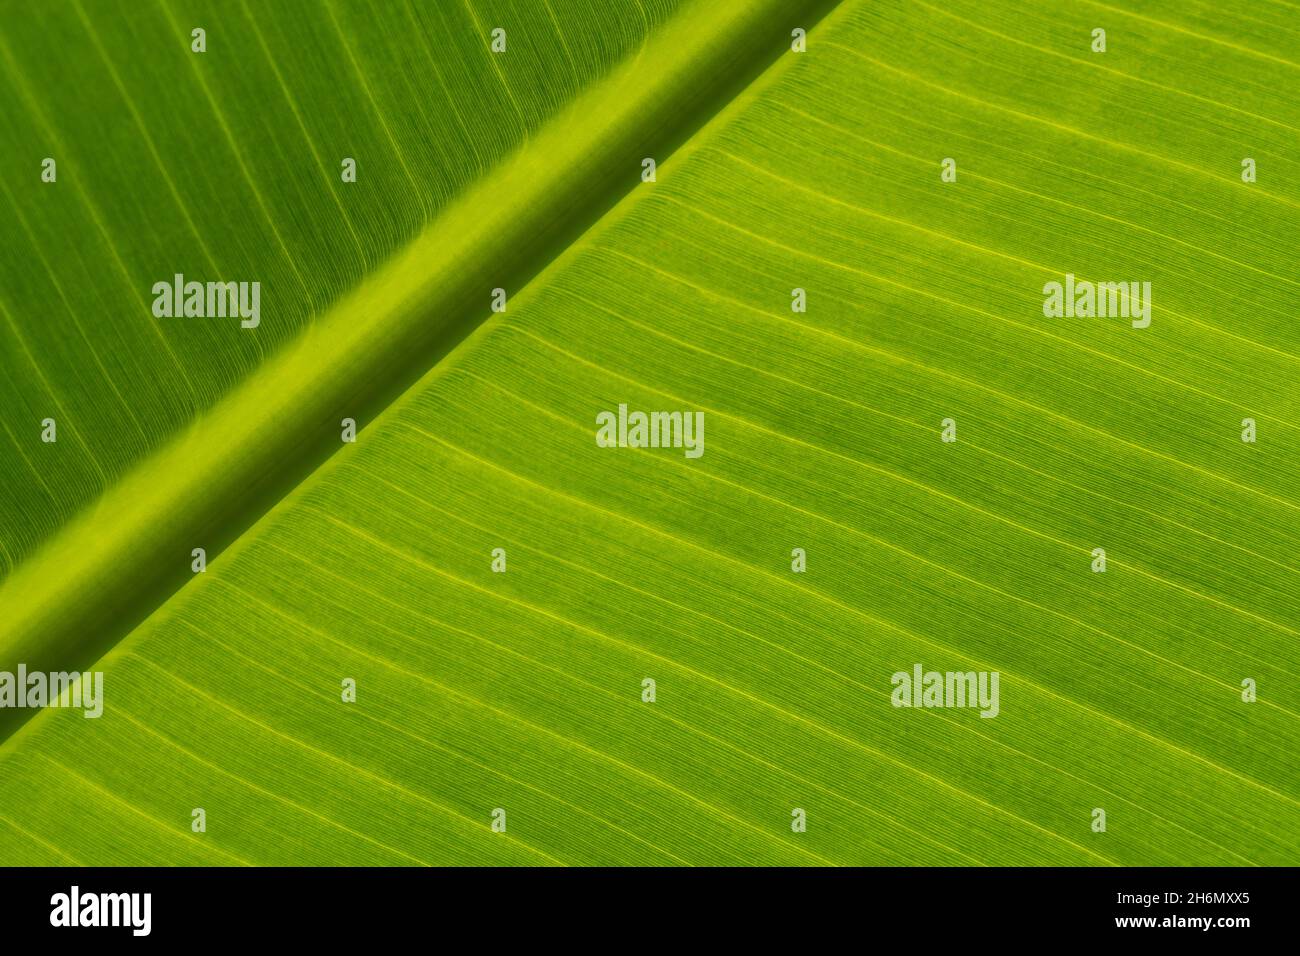 Textura de hojas verdes de una palma de plátano. Fondo ecológico de hojas exóticas, alces-up. Espacio de copia. Foto de stock